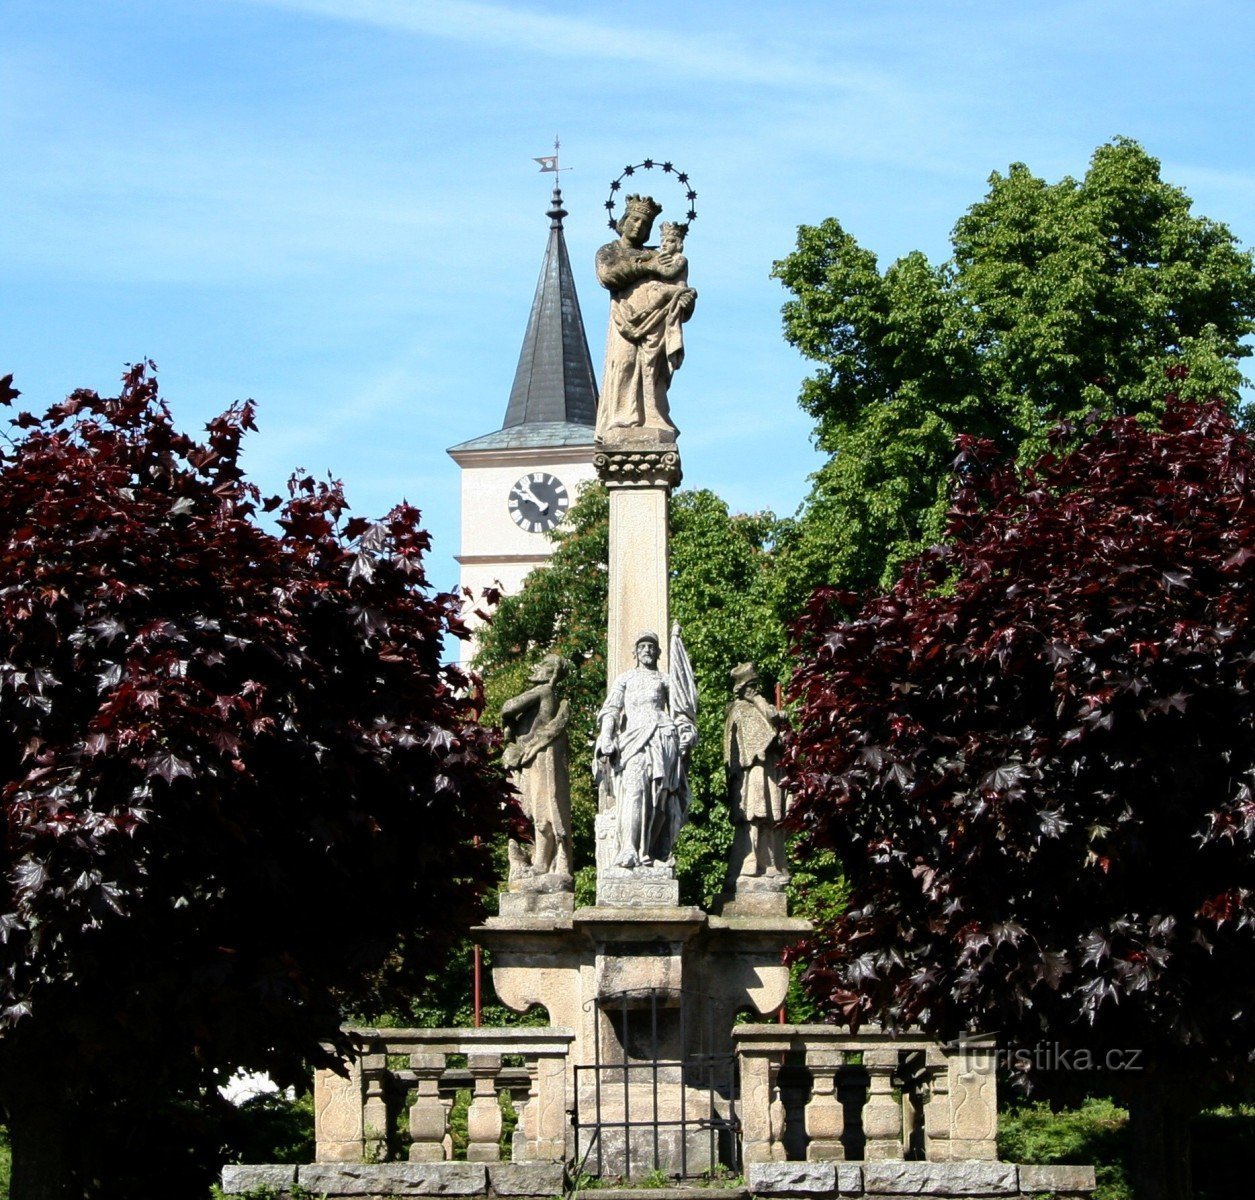 Marian skulptur